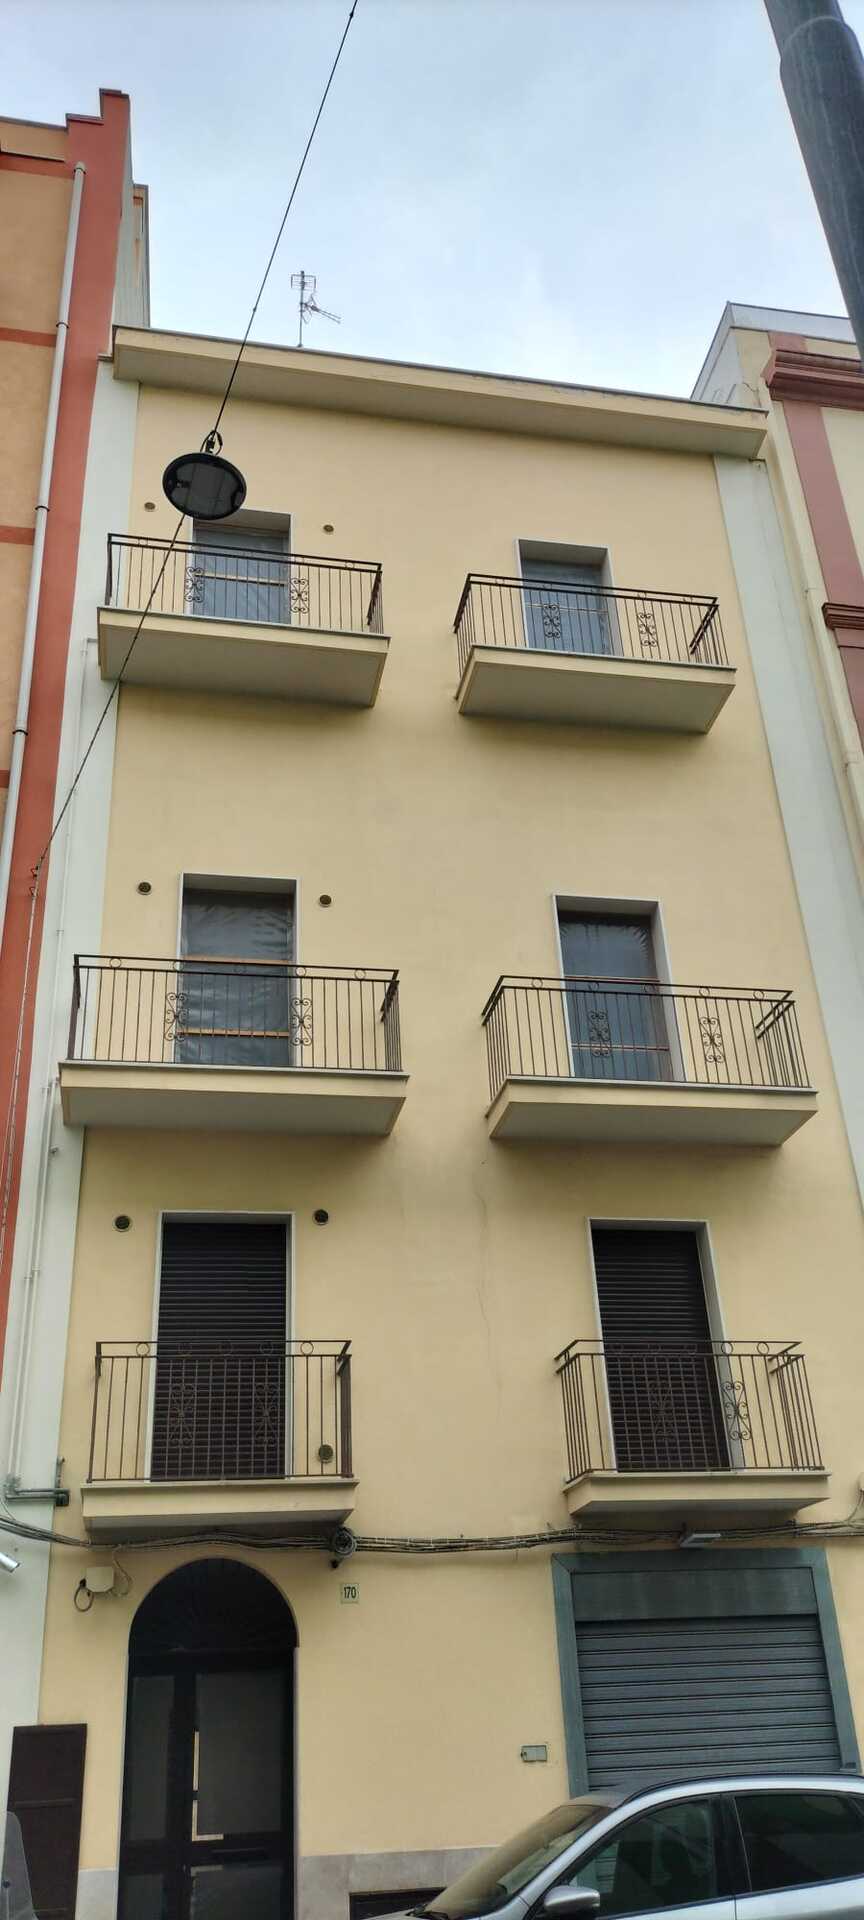 Vendita Palazzo Signorile a Bari Città | luxforsale.it